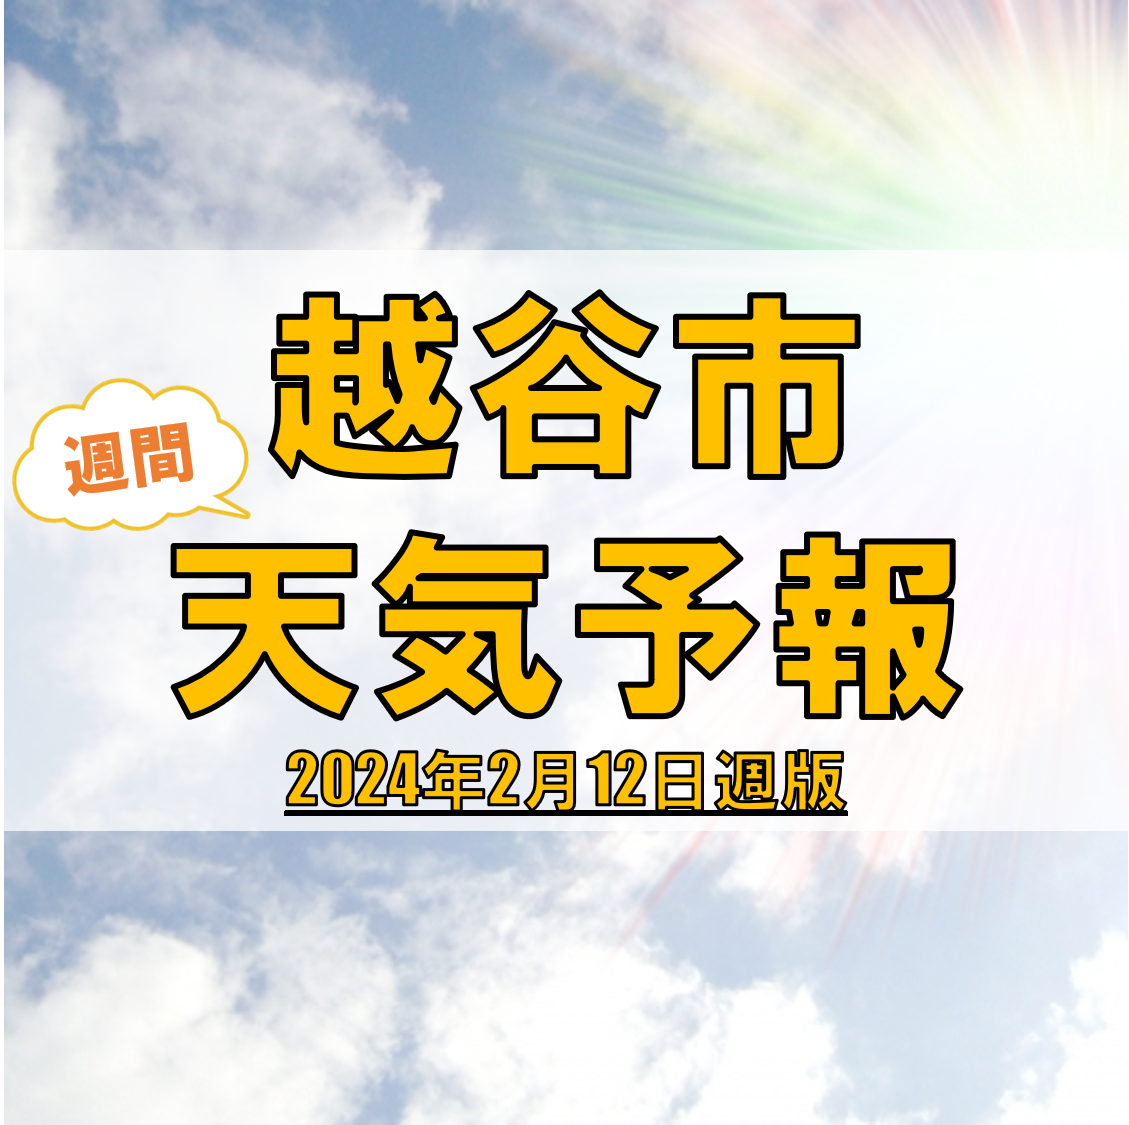 越谷市の天気 週間予報【2024年2月12日週】